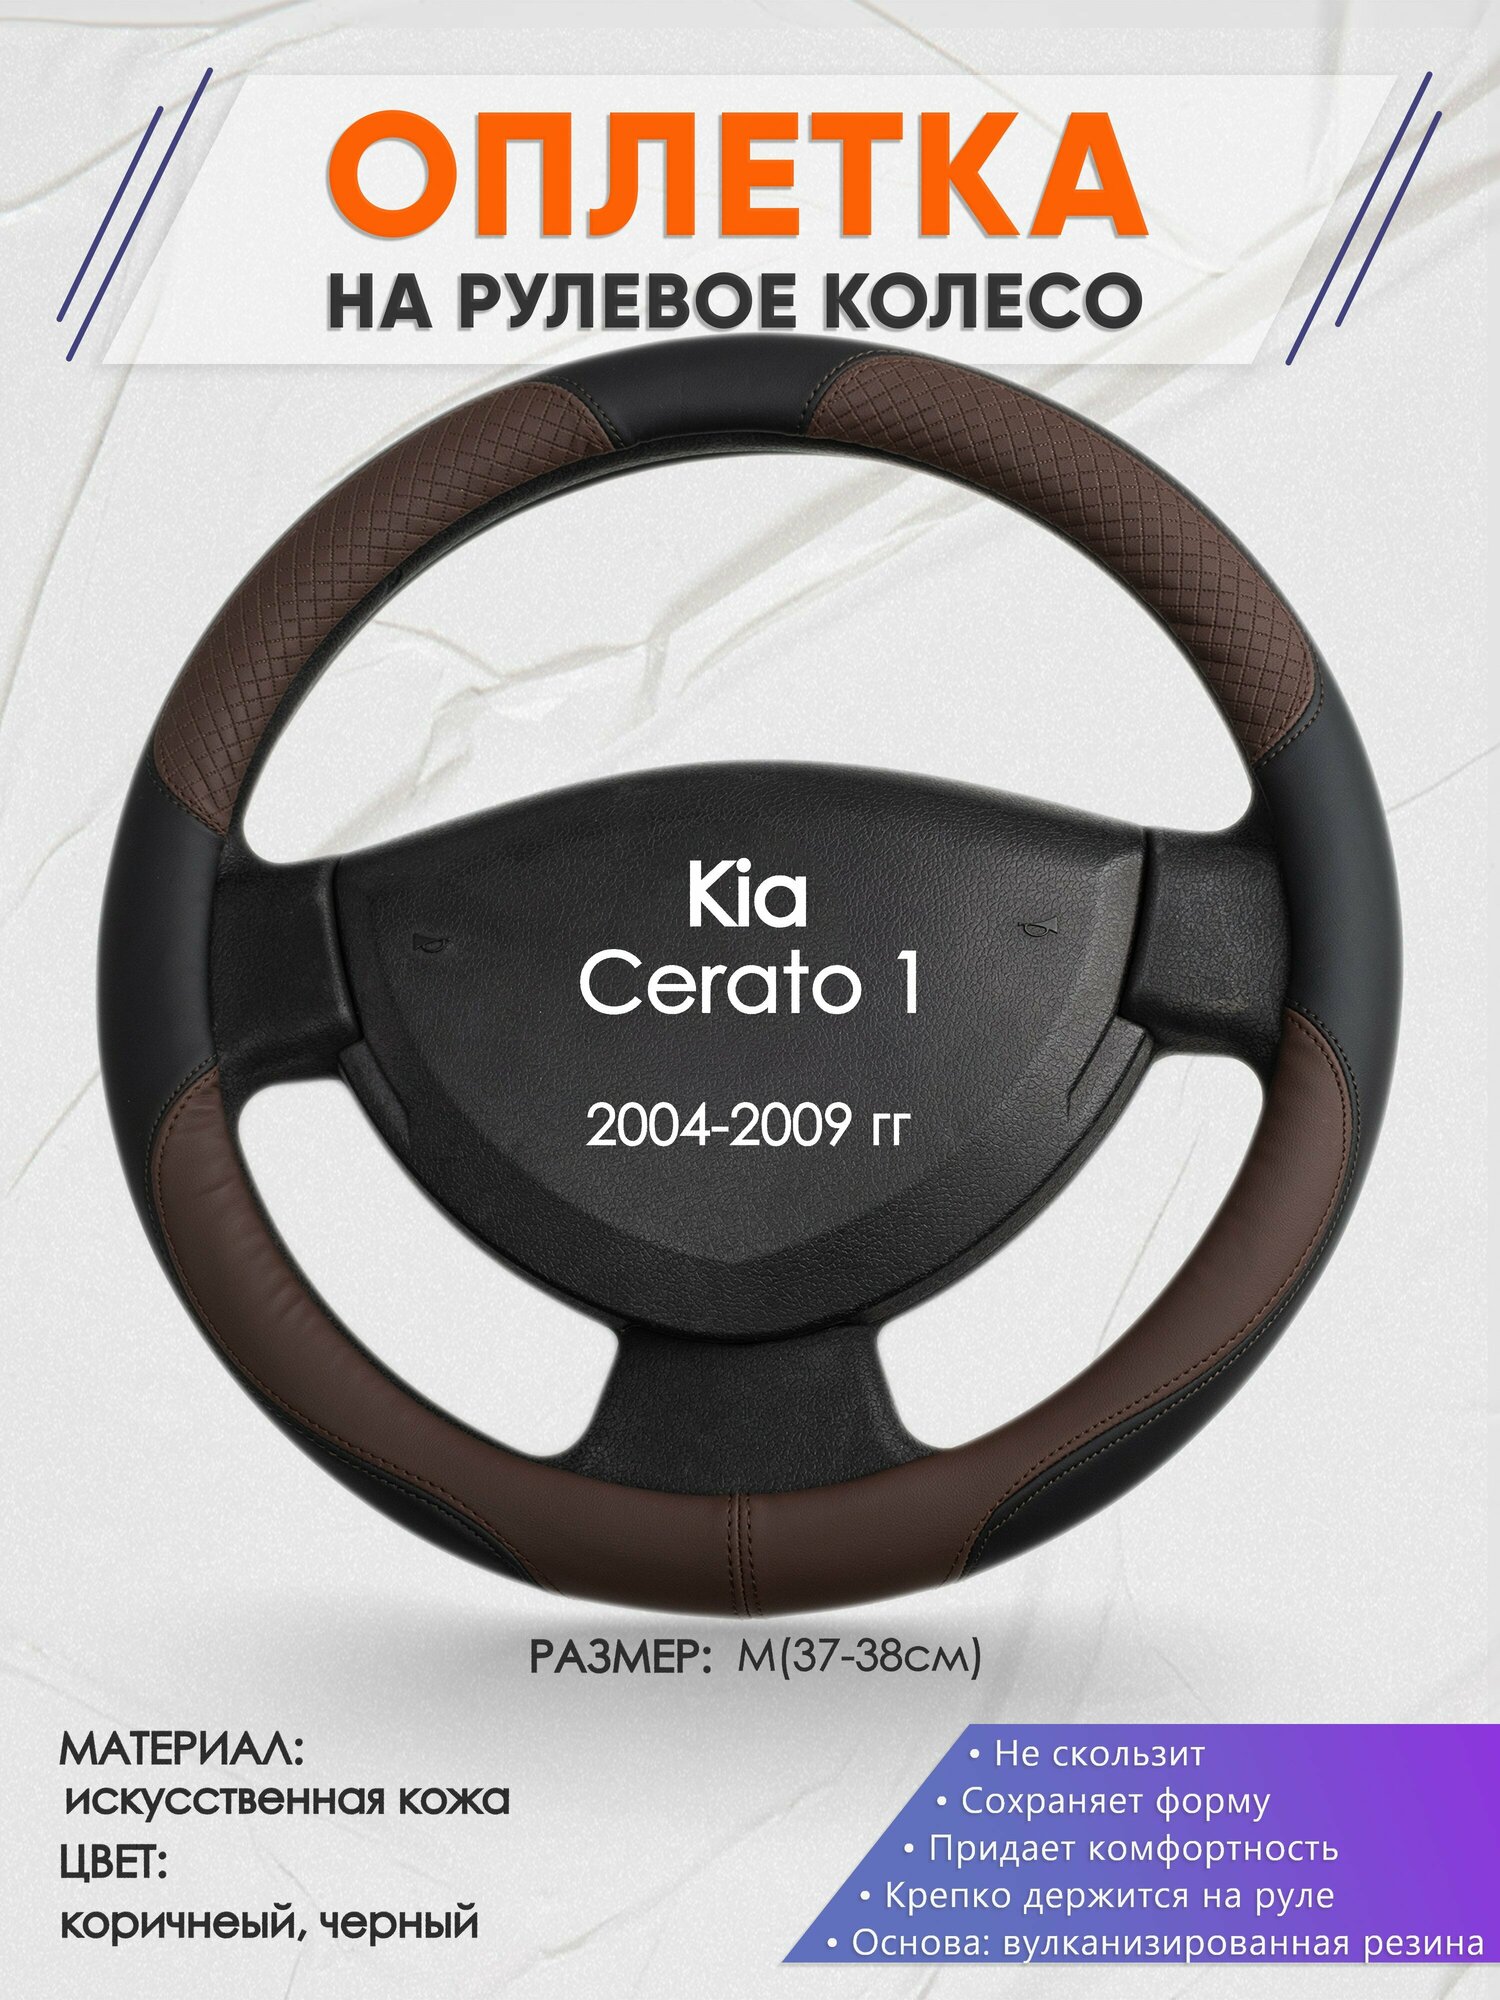 Оплетка на руль для Kia Cerato 1(Киа Церато 1 поколения) 2004-2009, M(37-38см), Искусственная кожа 62